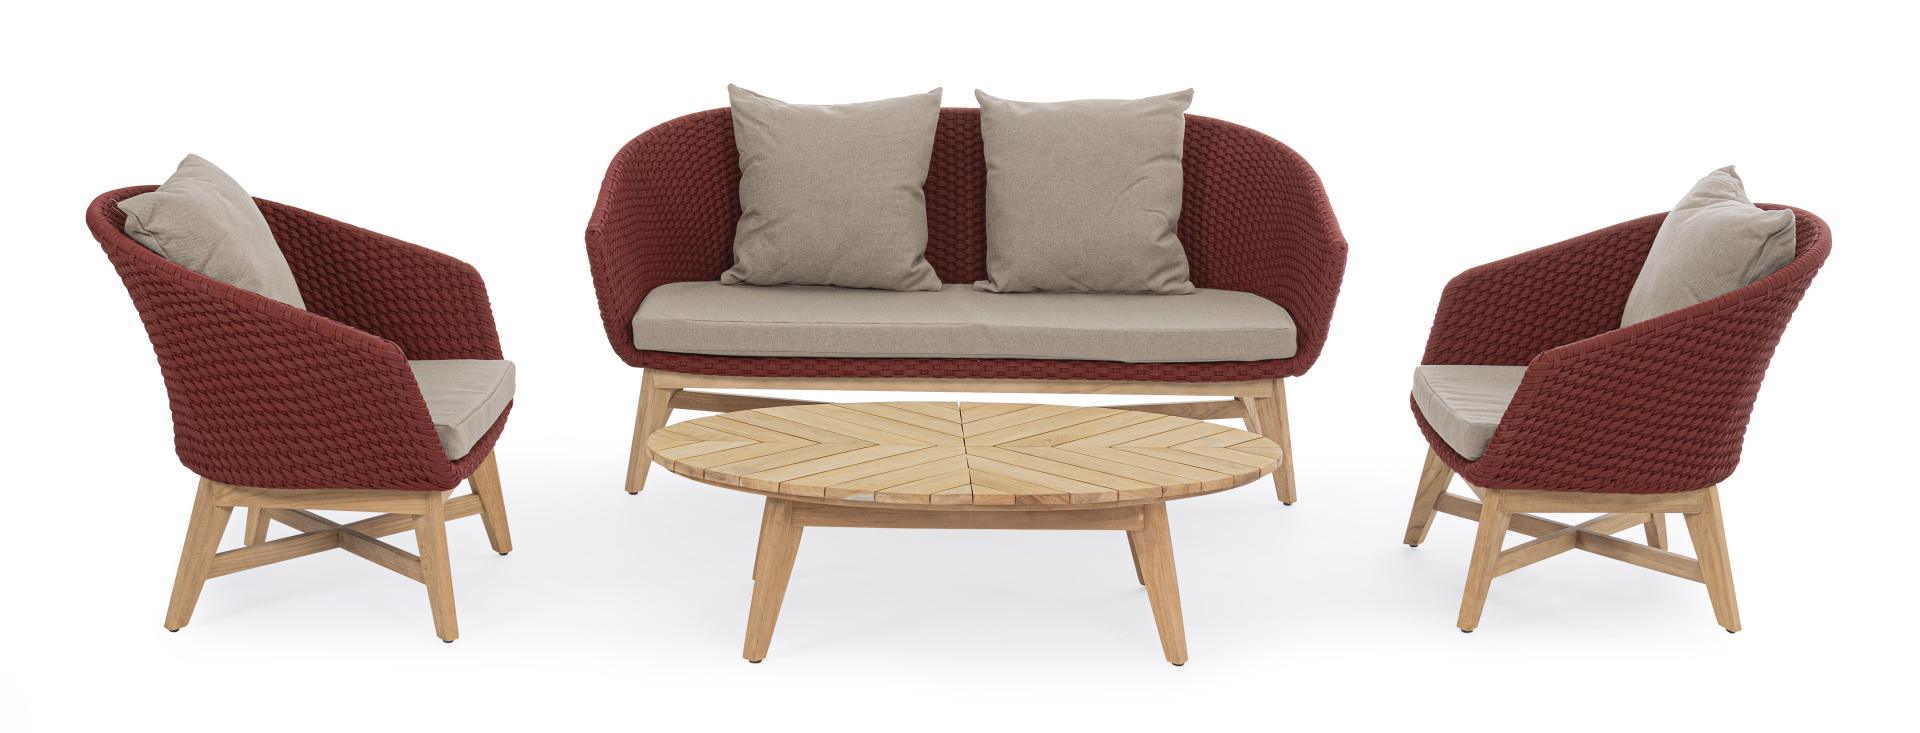 Das Gartensofa Coachella überzeugt mit seinem modernen Design. Gefertigt wurde es aus Olefin-Stoff, welcher einen roten Farbton besitzt. Das Gestell ist aus Teakholz und hat eine natürliche Farbe. Das Sofa verfügt über eine Sitzhöhe von 39 cm und ist für 